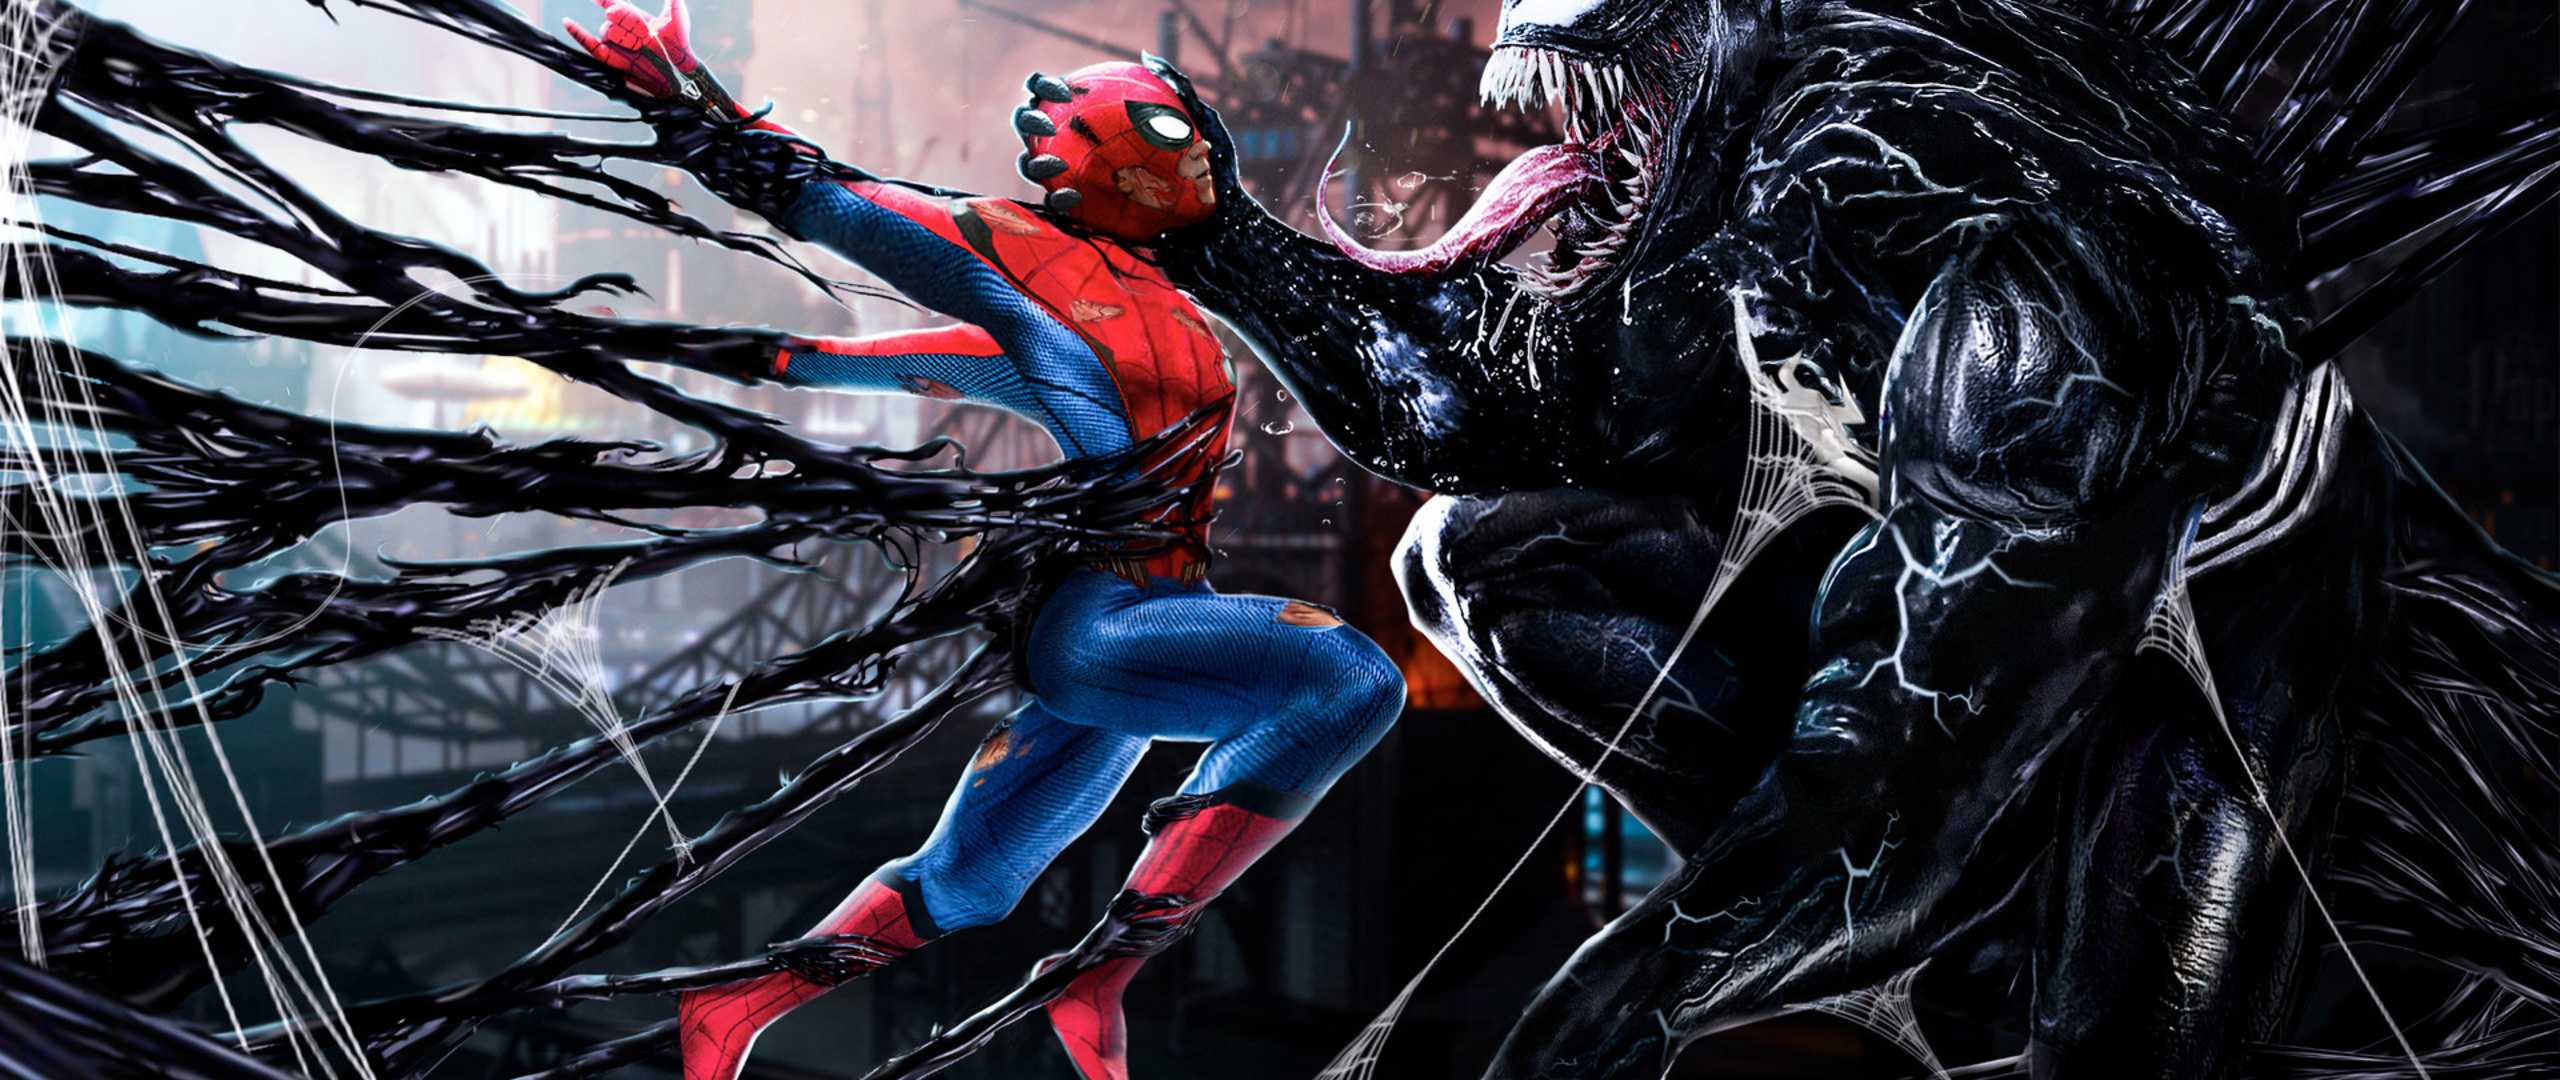 Spiderman Vs Venom Digital Art In 2560x1080 Resolution. 